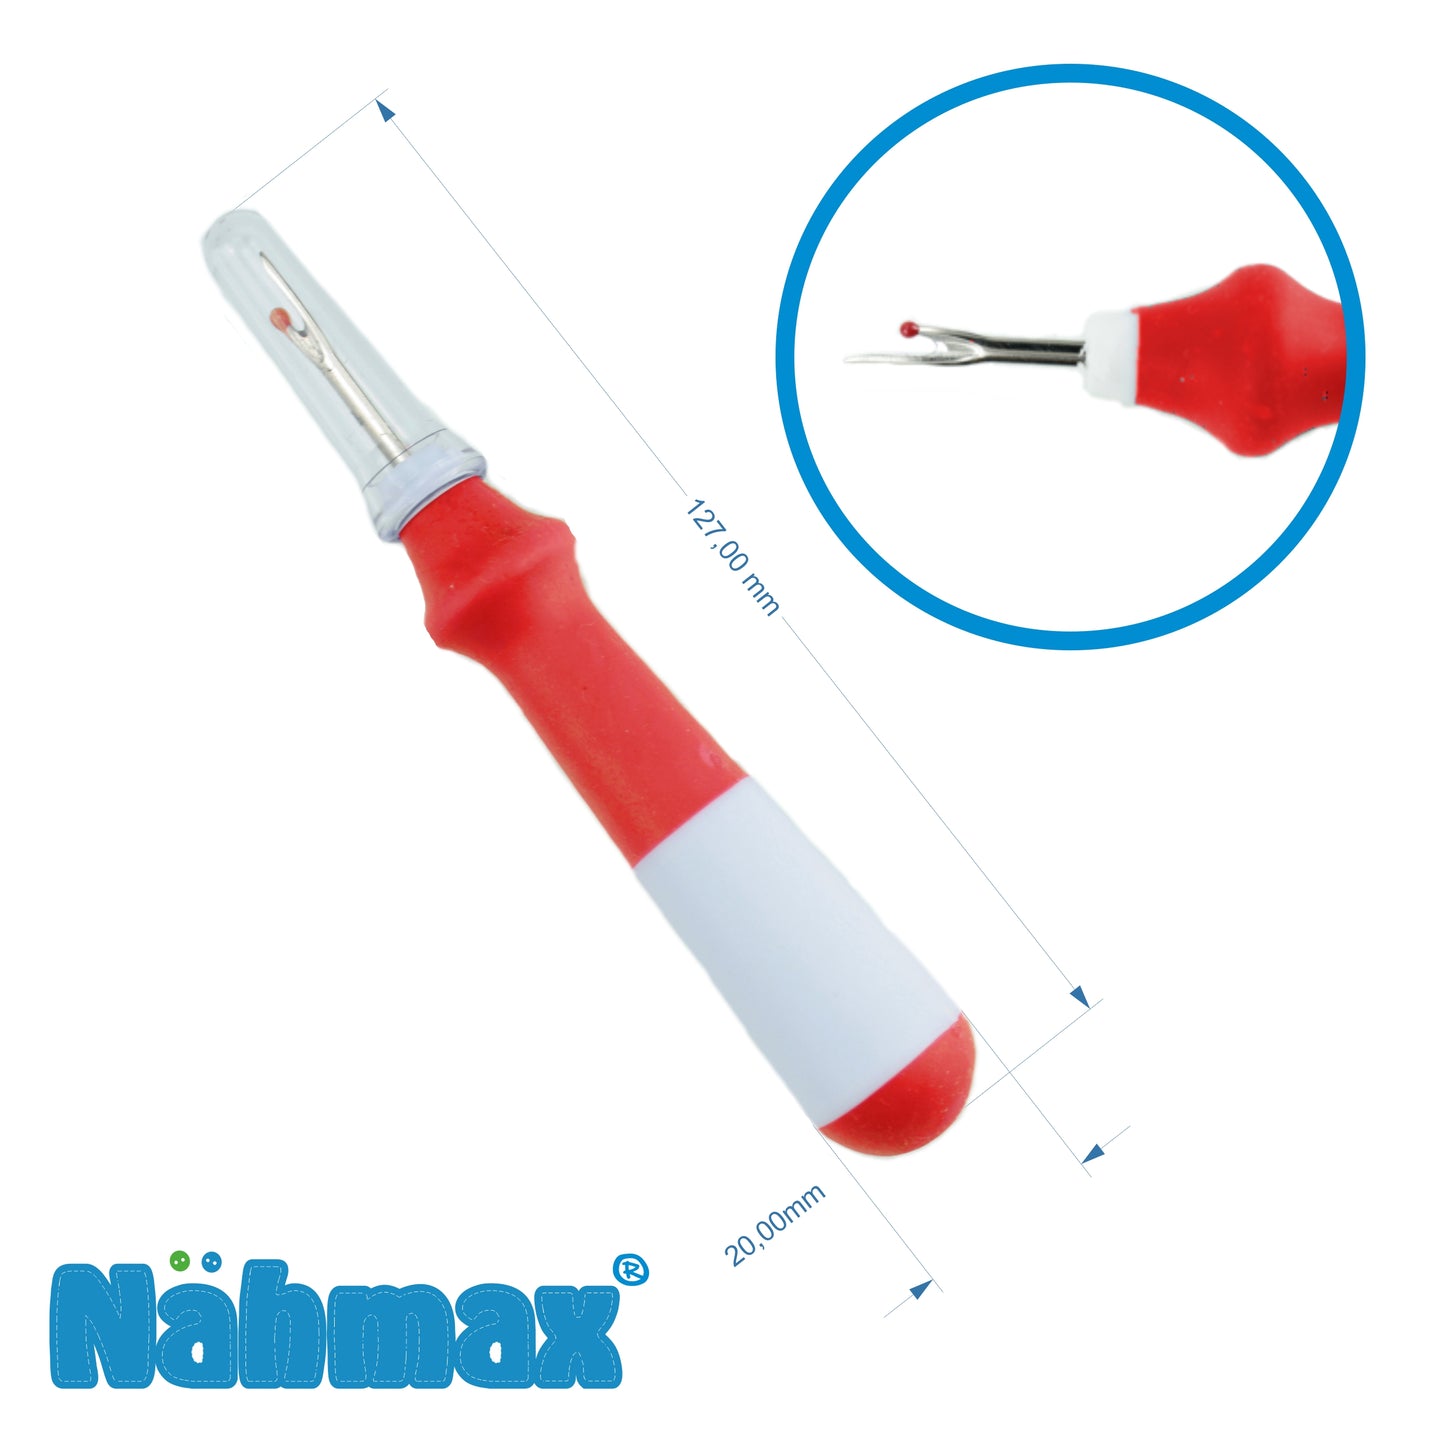 Nähmax Naht-Fix seam ripper red with eraser function 314990